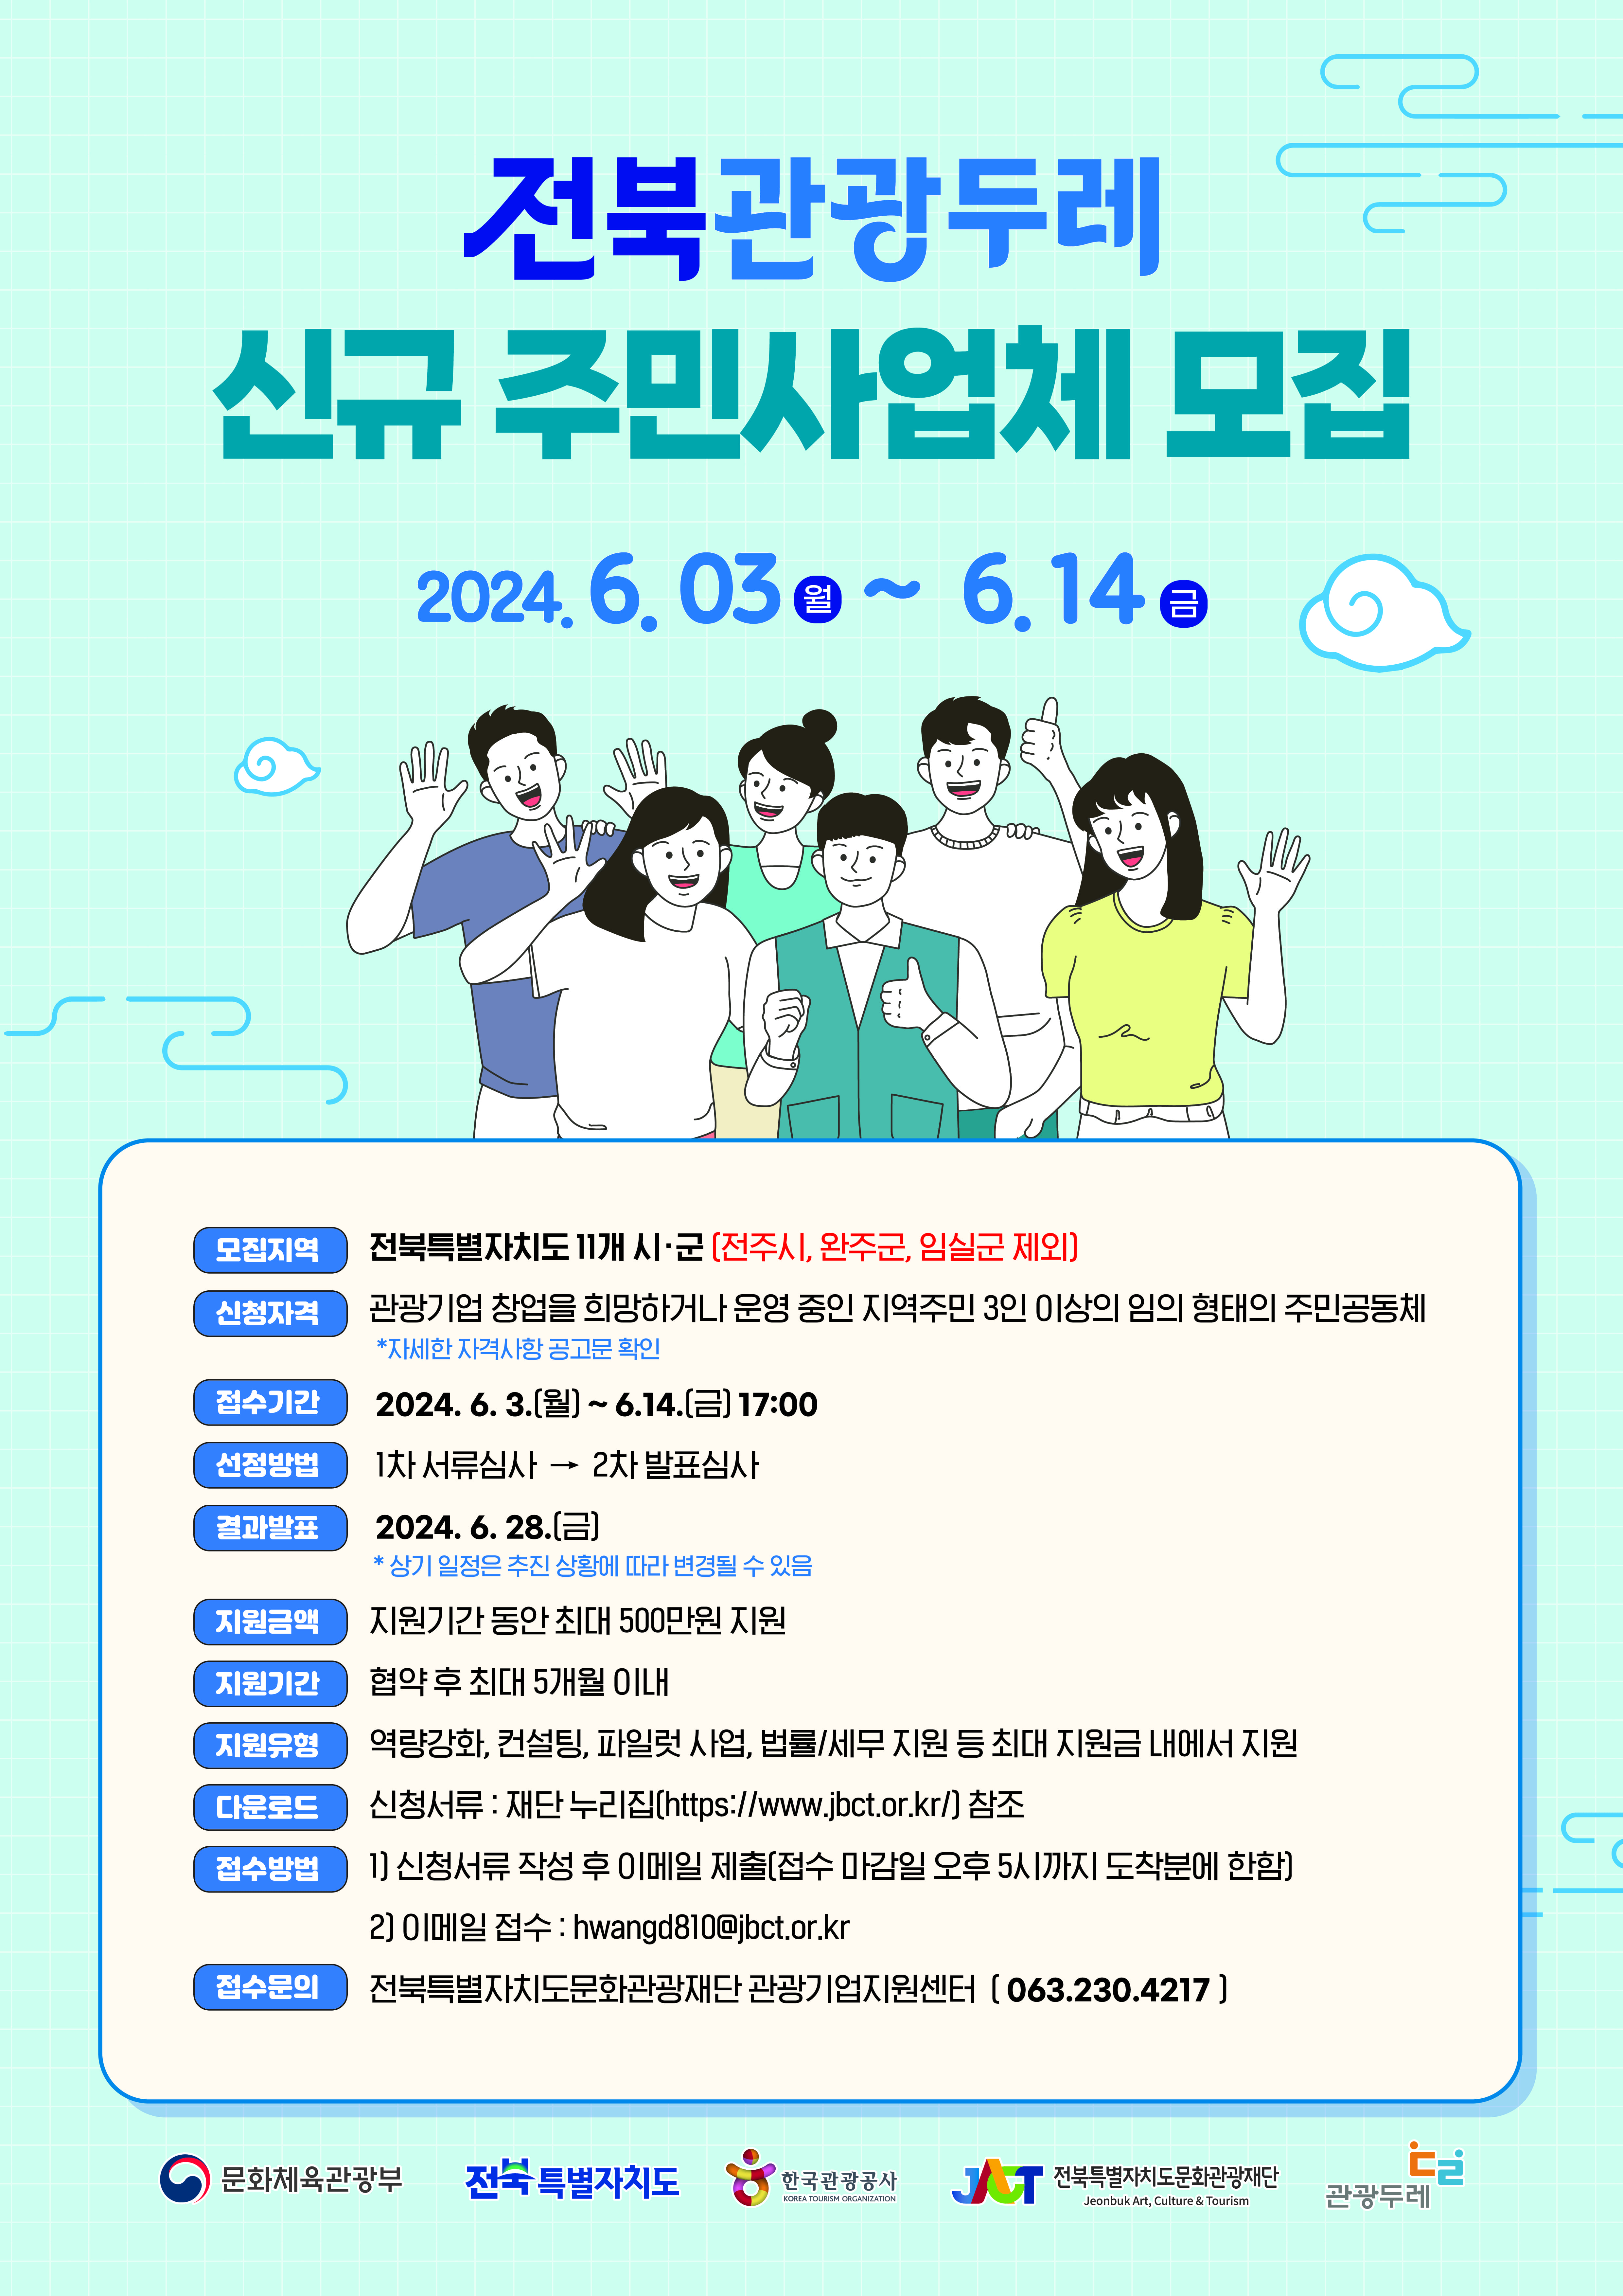 「2024 전북 관광두레 신규 주민사업체 모집 공모」안내 사진